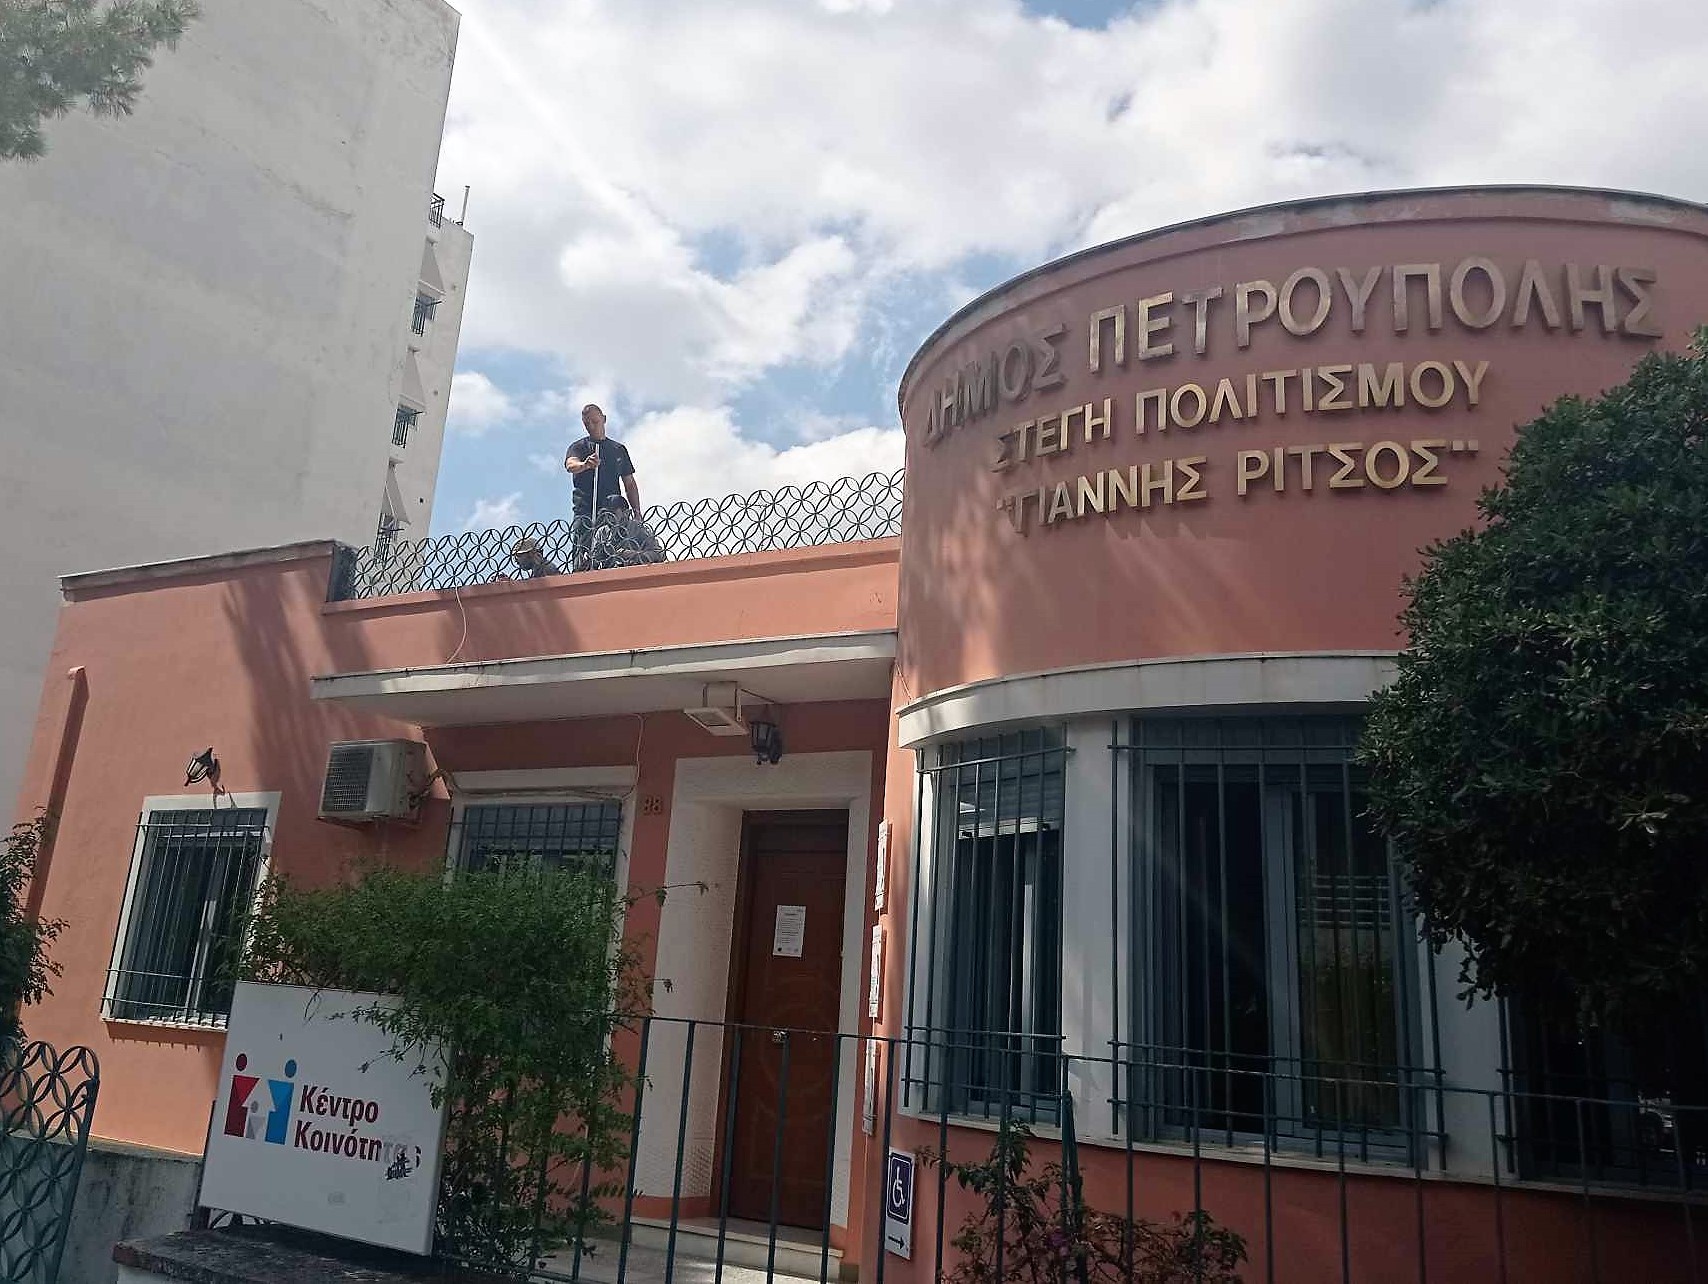 Γιατί το Αστεροσκοπείο μετράει τους ρύπους στην Πετρούπολη;